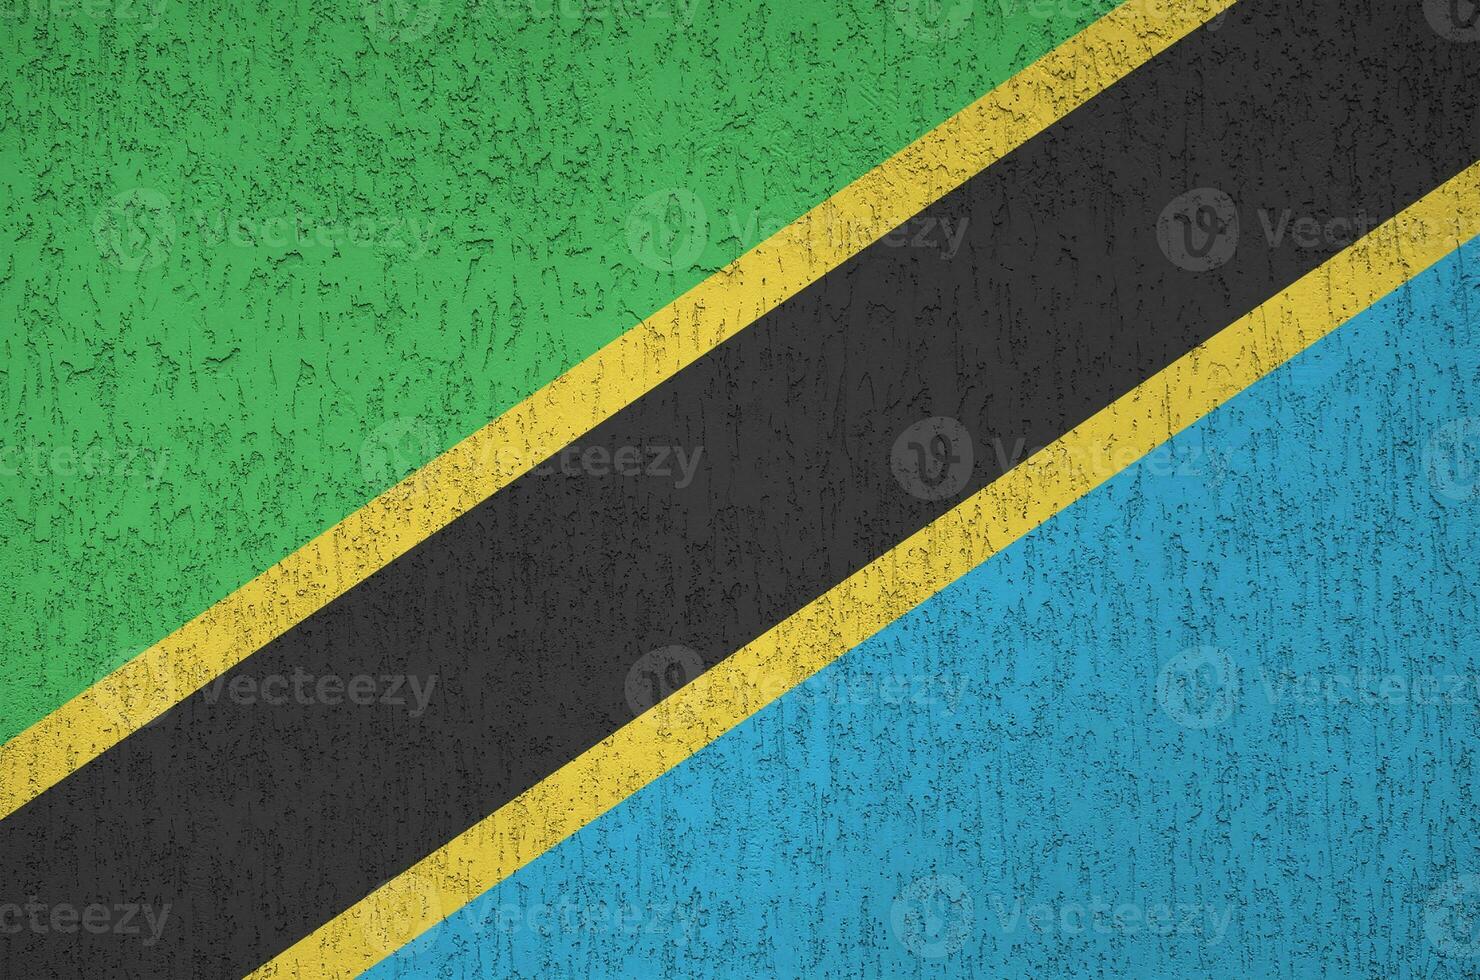 tanzania flagga avbildad i ljus måla färger på gammal lättnad putsning vägg. texturerad baner på grov bakgrund foto